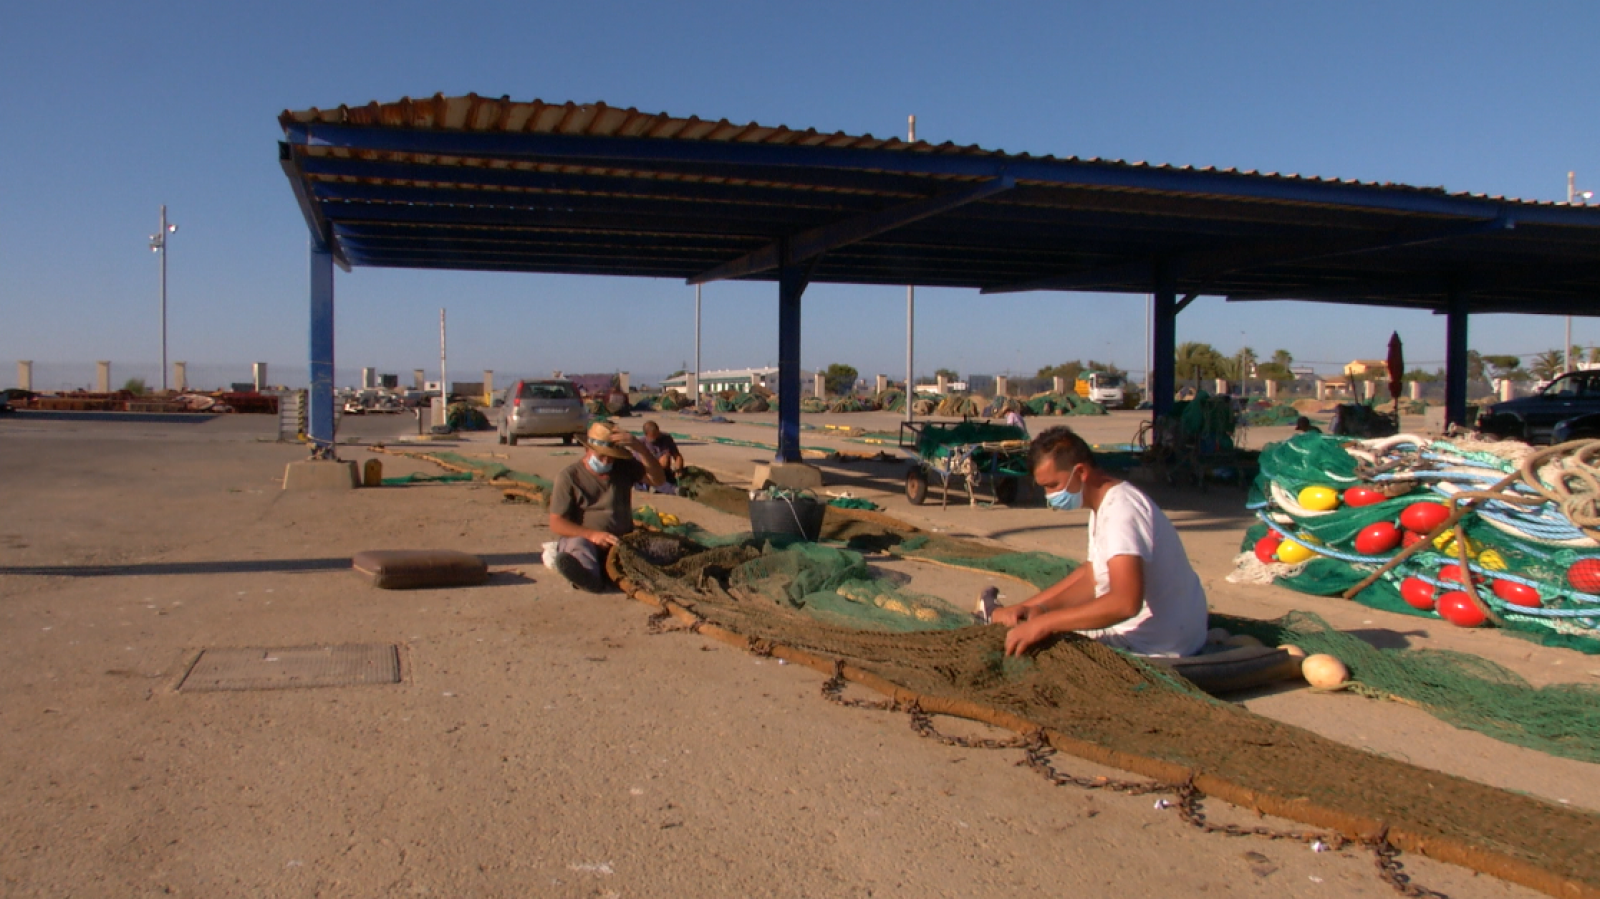 La tradición pesquera del arrastre en Sanlúcar de Barrameda